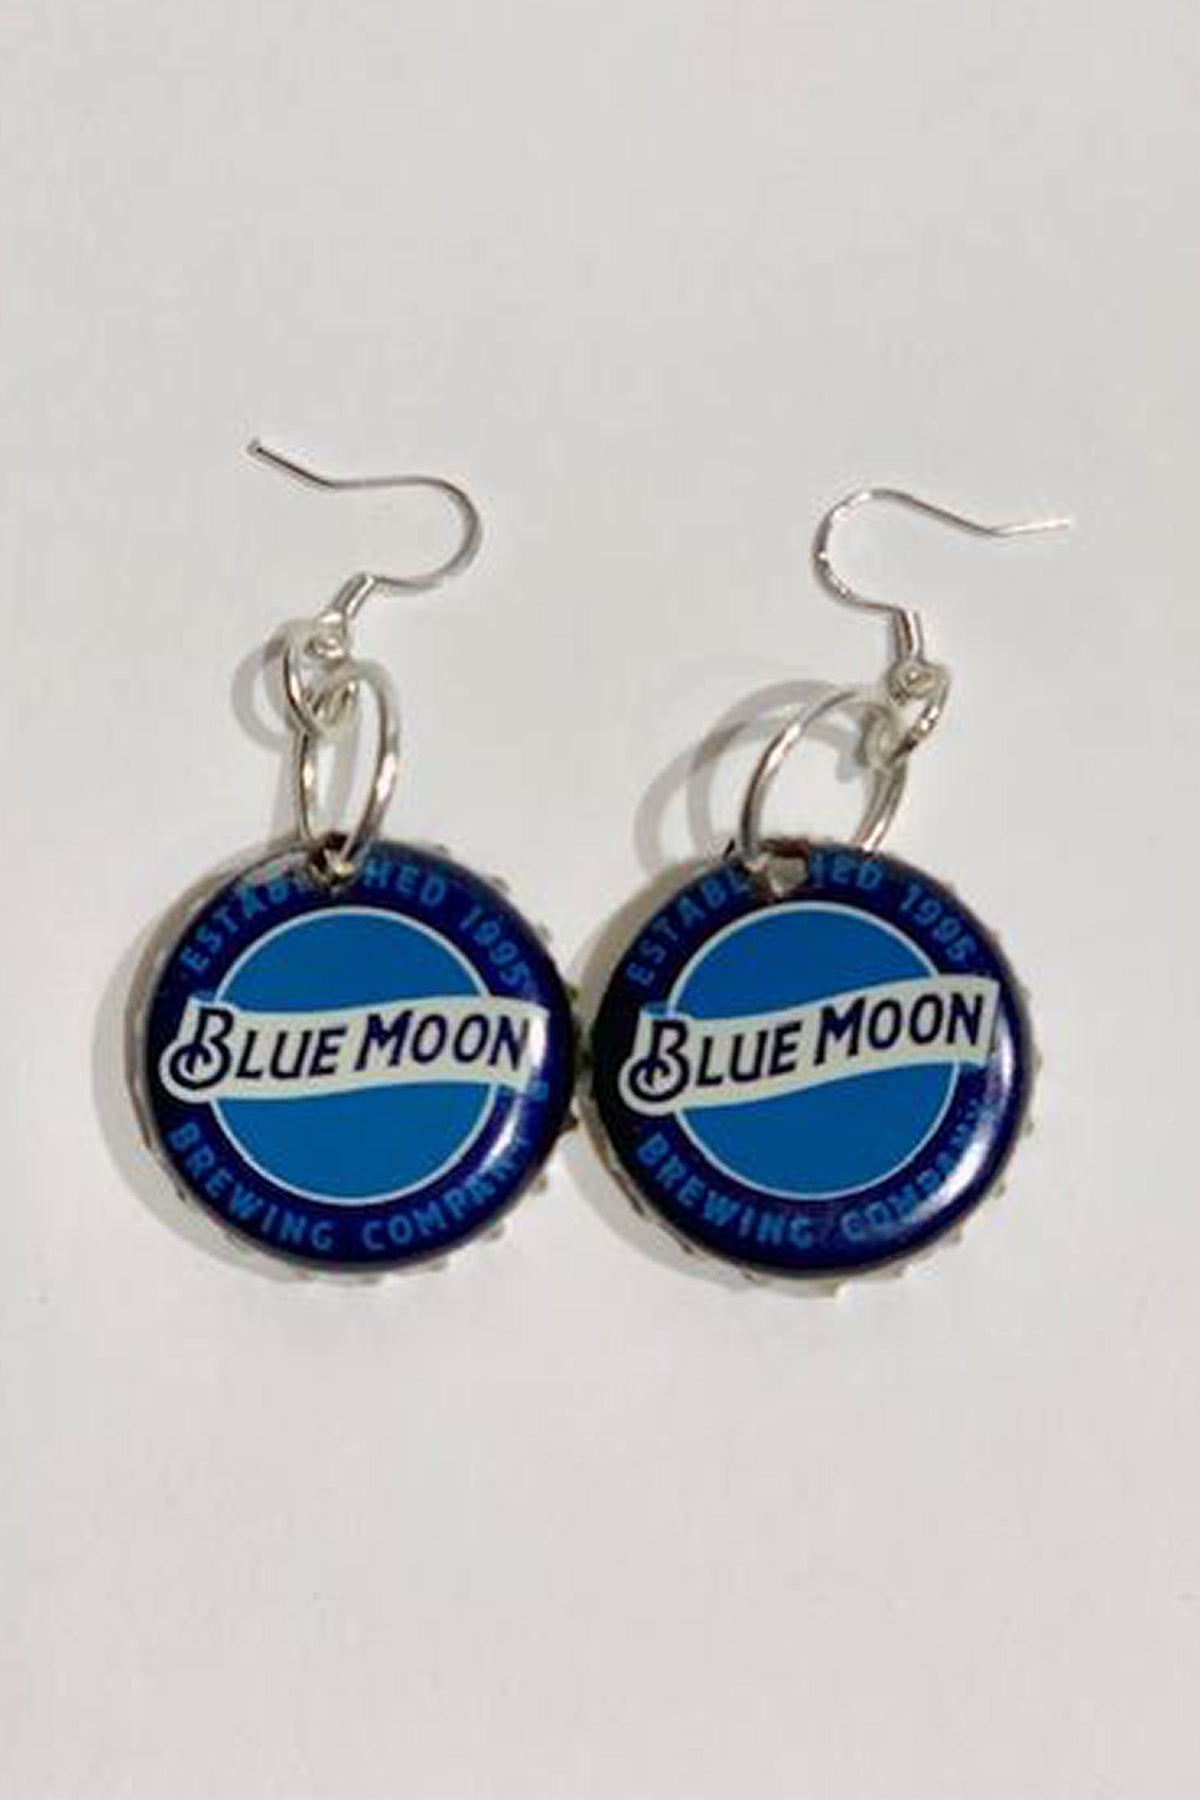 Blue Moon Bottle Cap Earrings